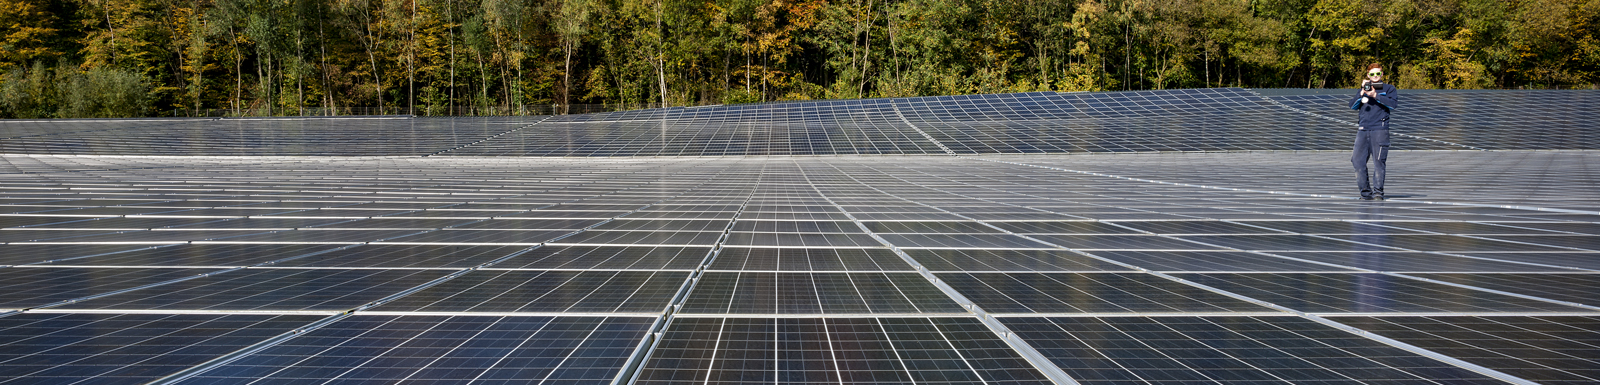 Mitarbeiter der Stadtwerke überprüft Solarpark